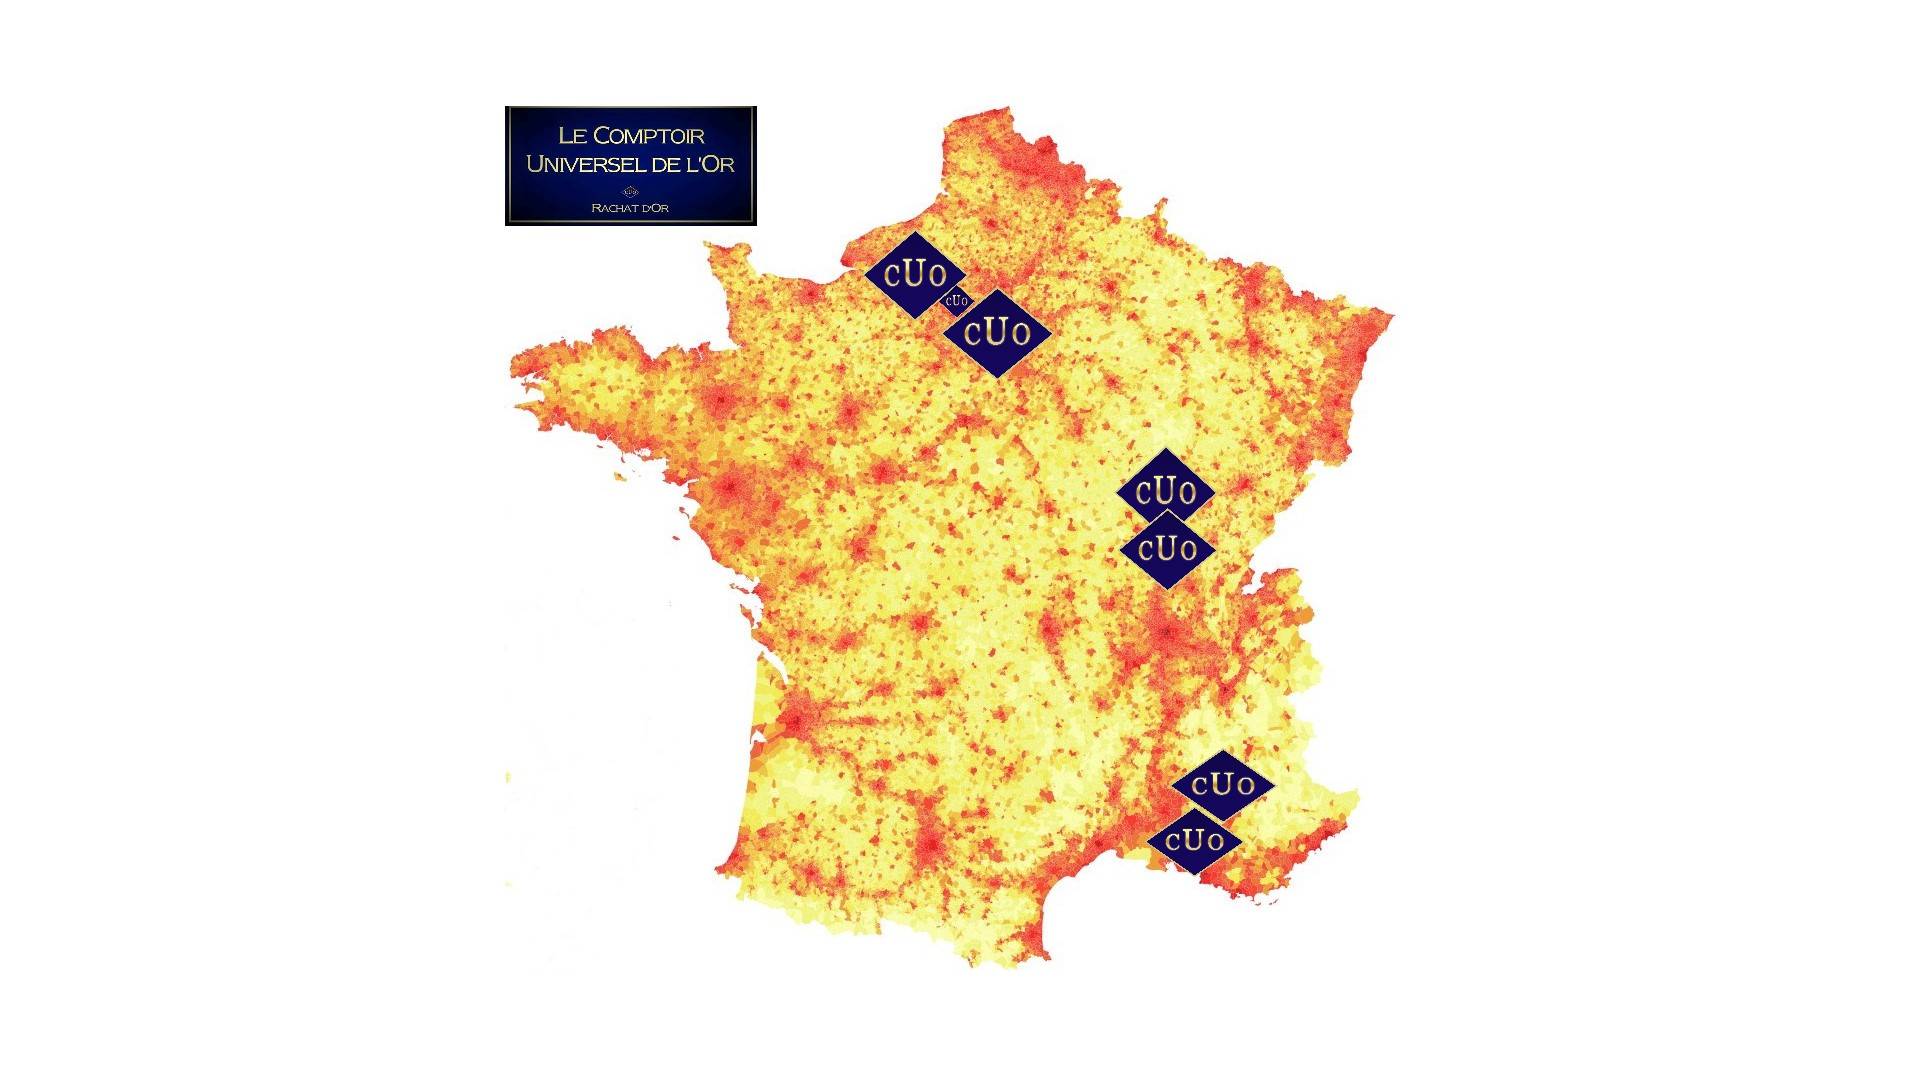 La carte de France des agences d'achat or et argent du Comptoir Universel de l'Or